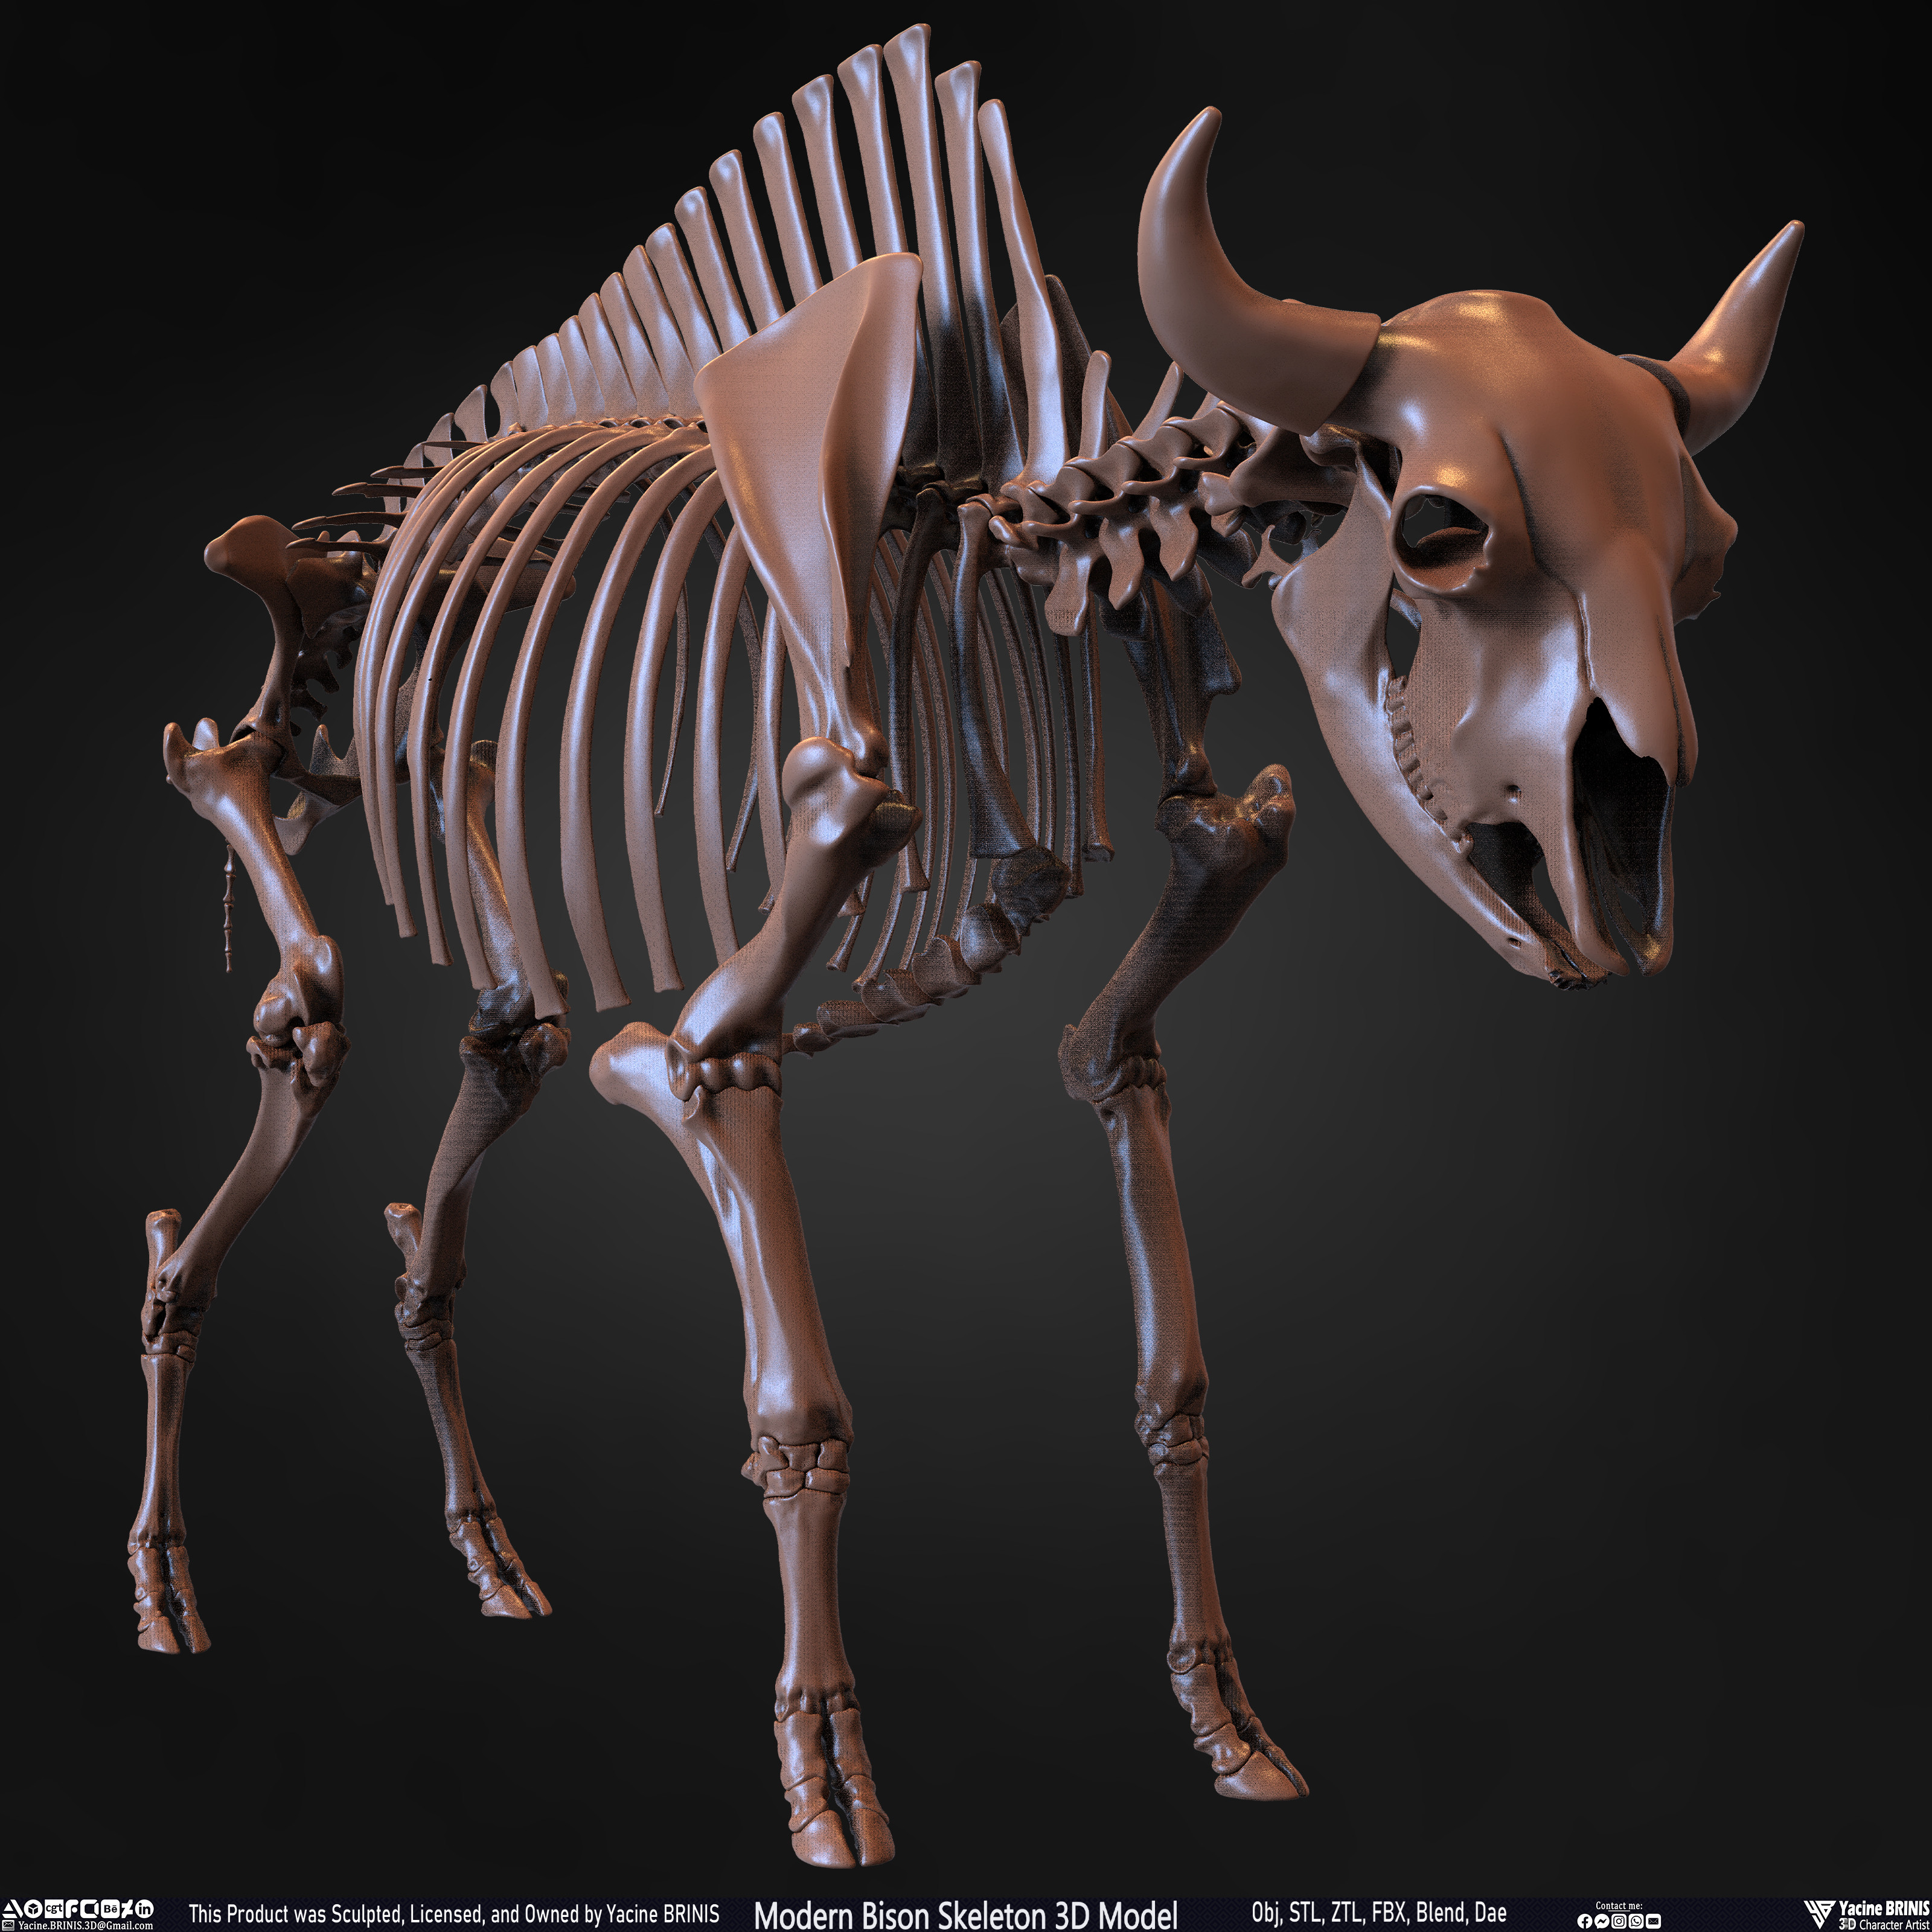 Modern Bison Skeleton 3D Model Sculpted by Yacine BRINIS Set 004